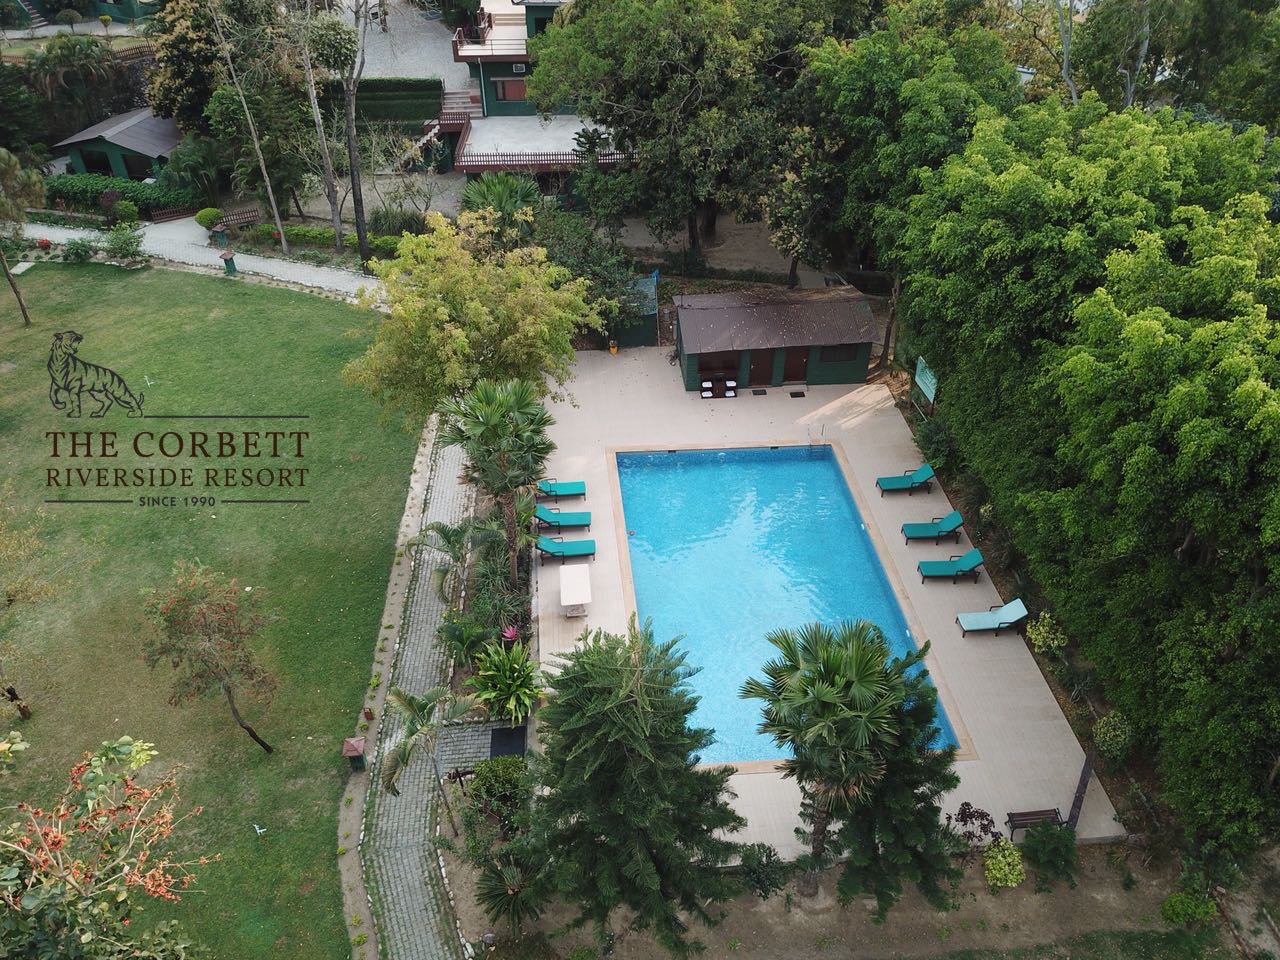 Corbett- Riverside resort